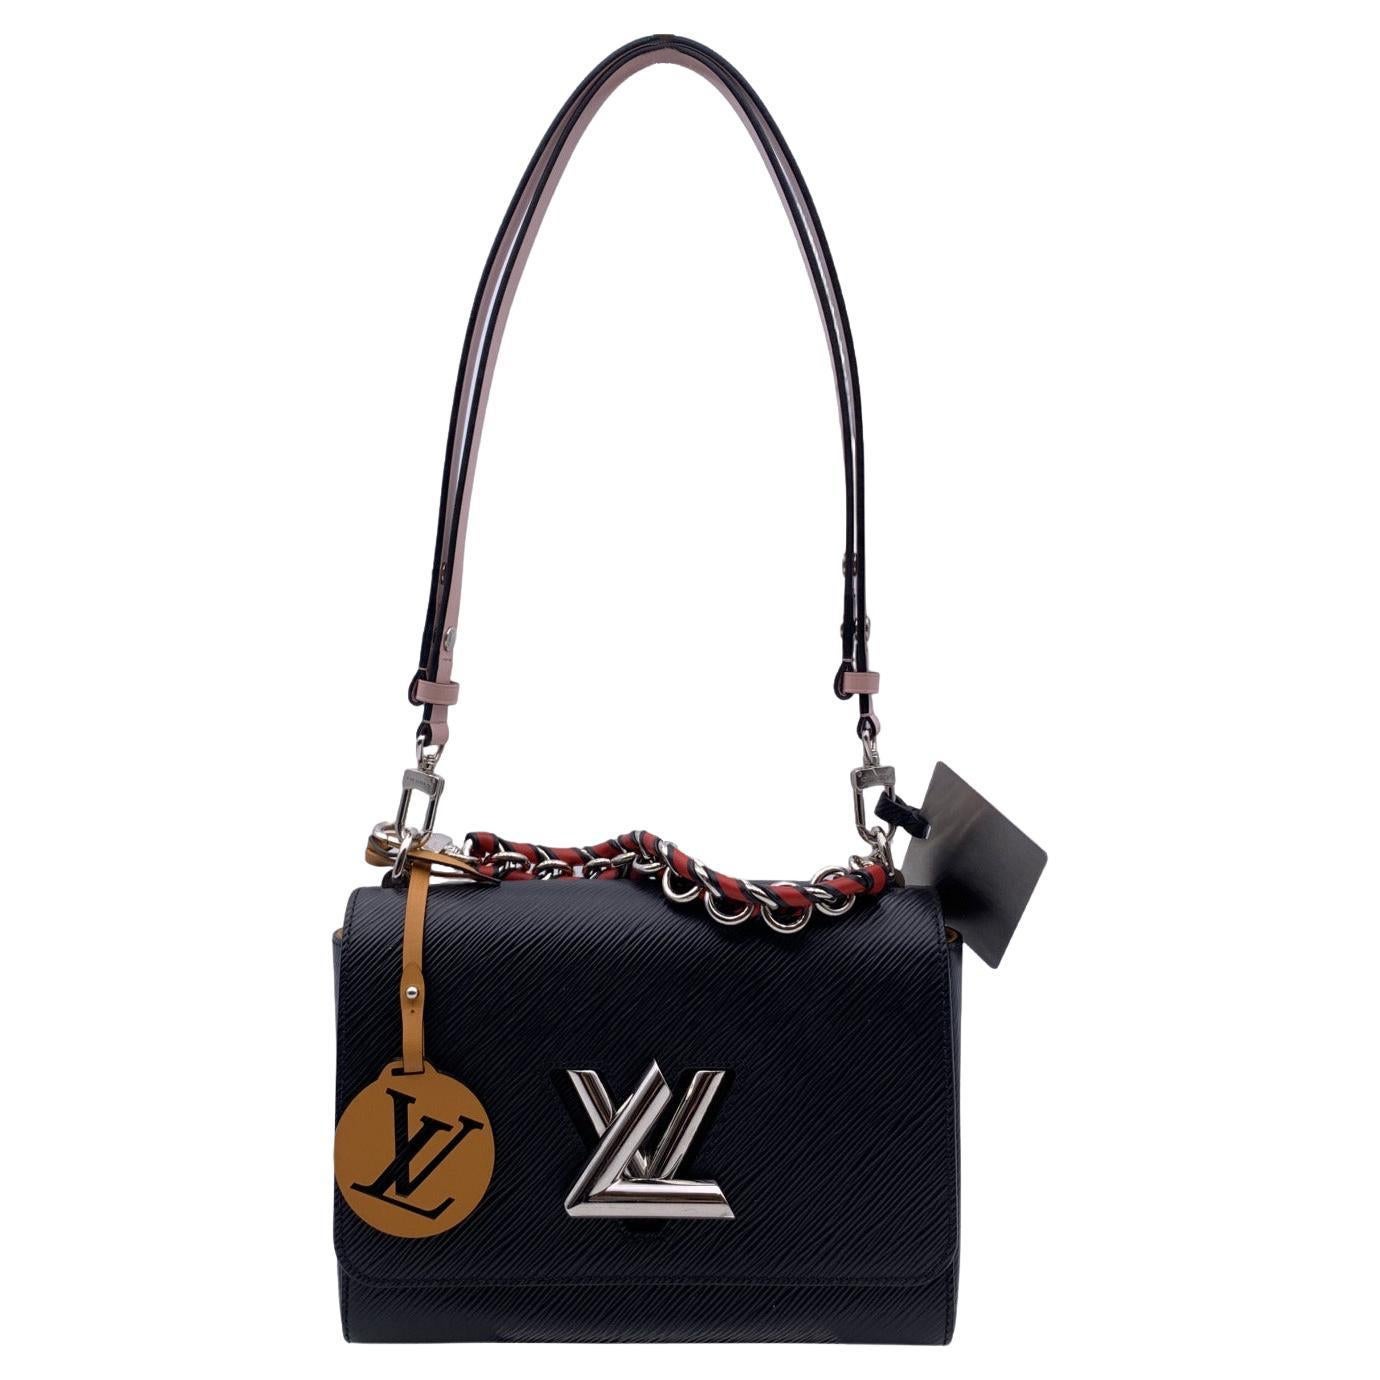 Louis Vuitton Braided Scarf Chain Bag Charm, Black, One Size